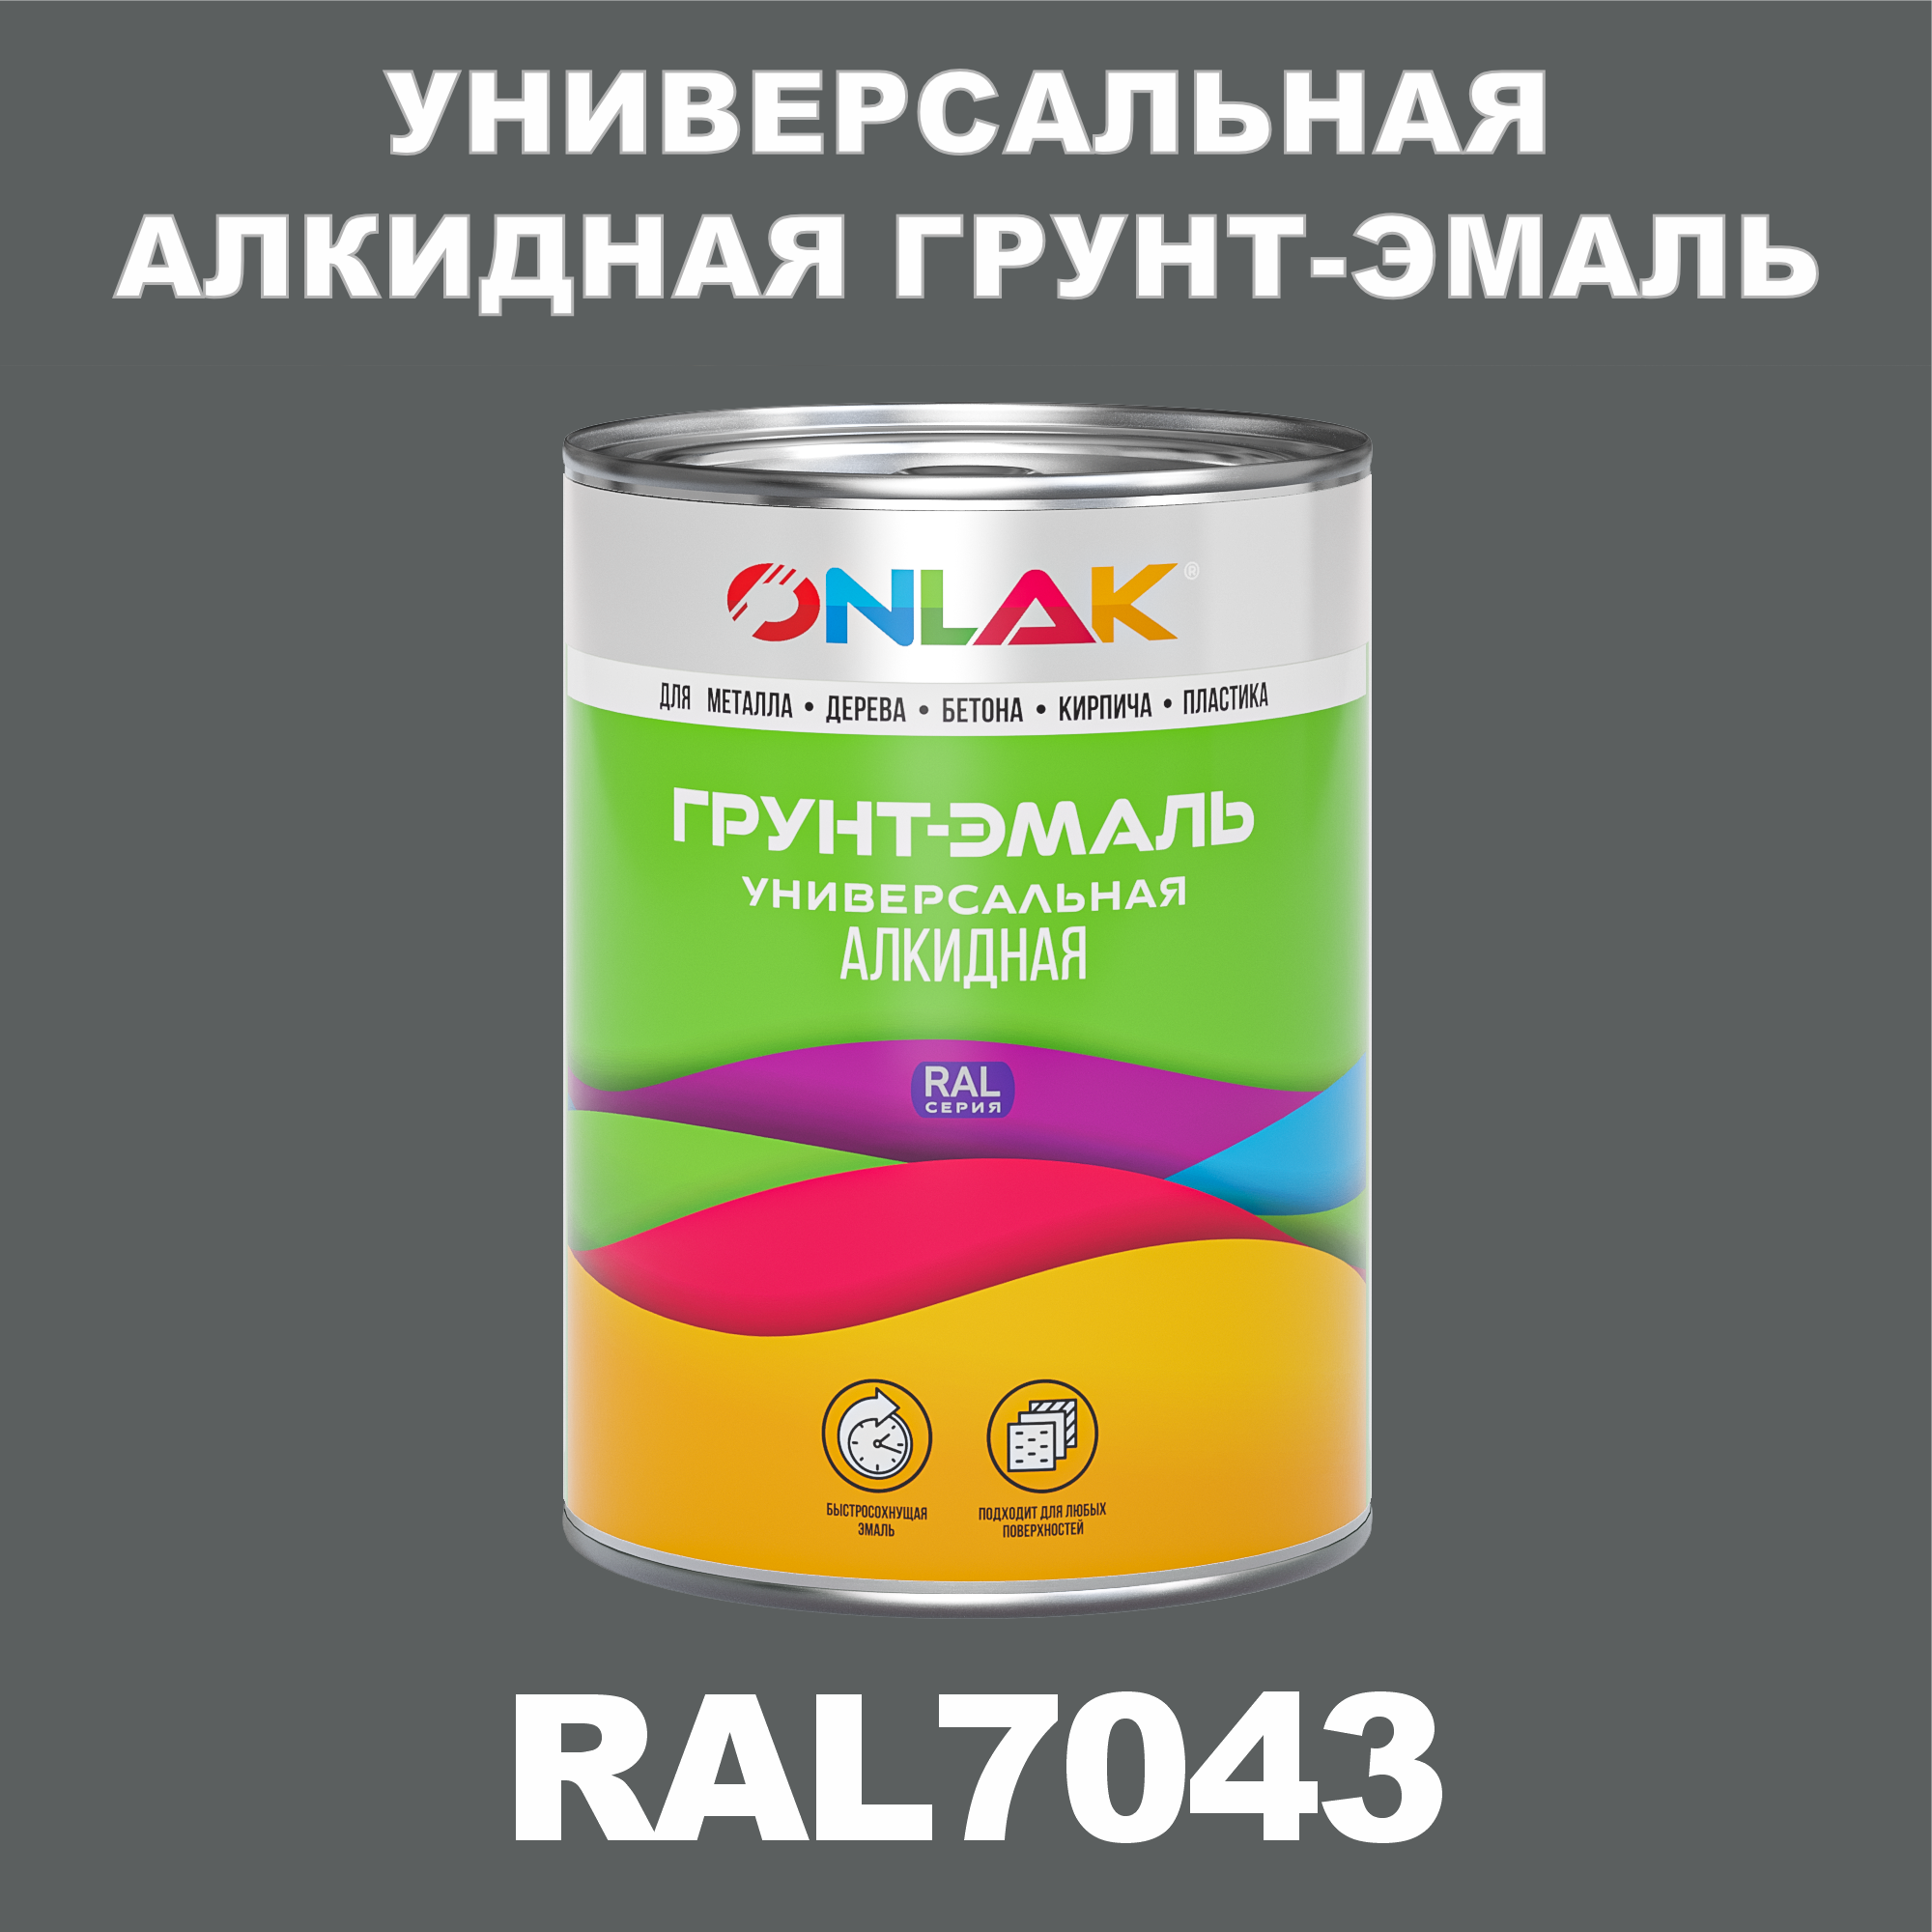 Антикоррозионная алкидная 1К грунт-эмаль ONLAK в банке, быстросохнущая, полуматовая, по металлу, по ржавчине, банка 1 кг, RAL7043